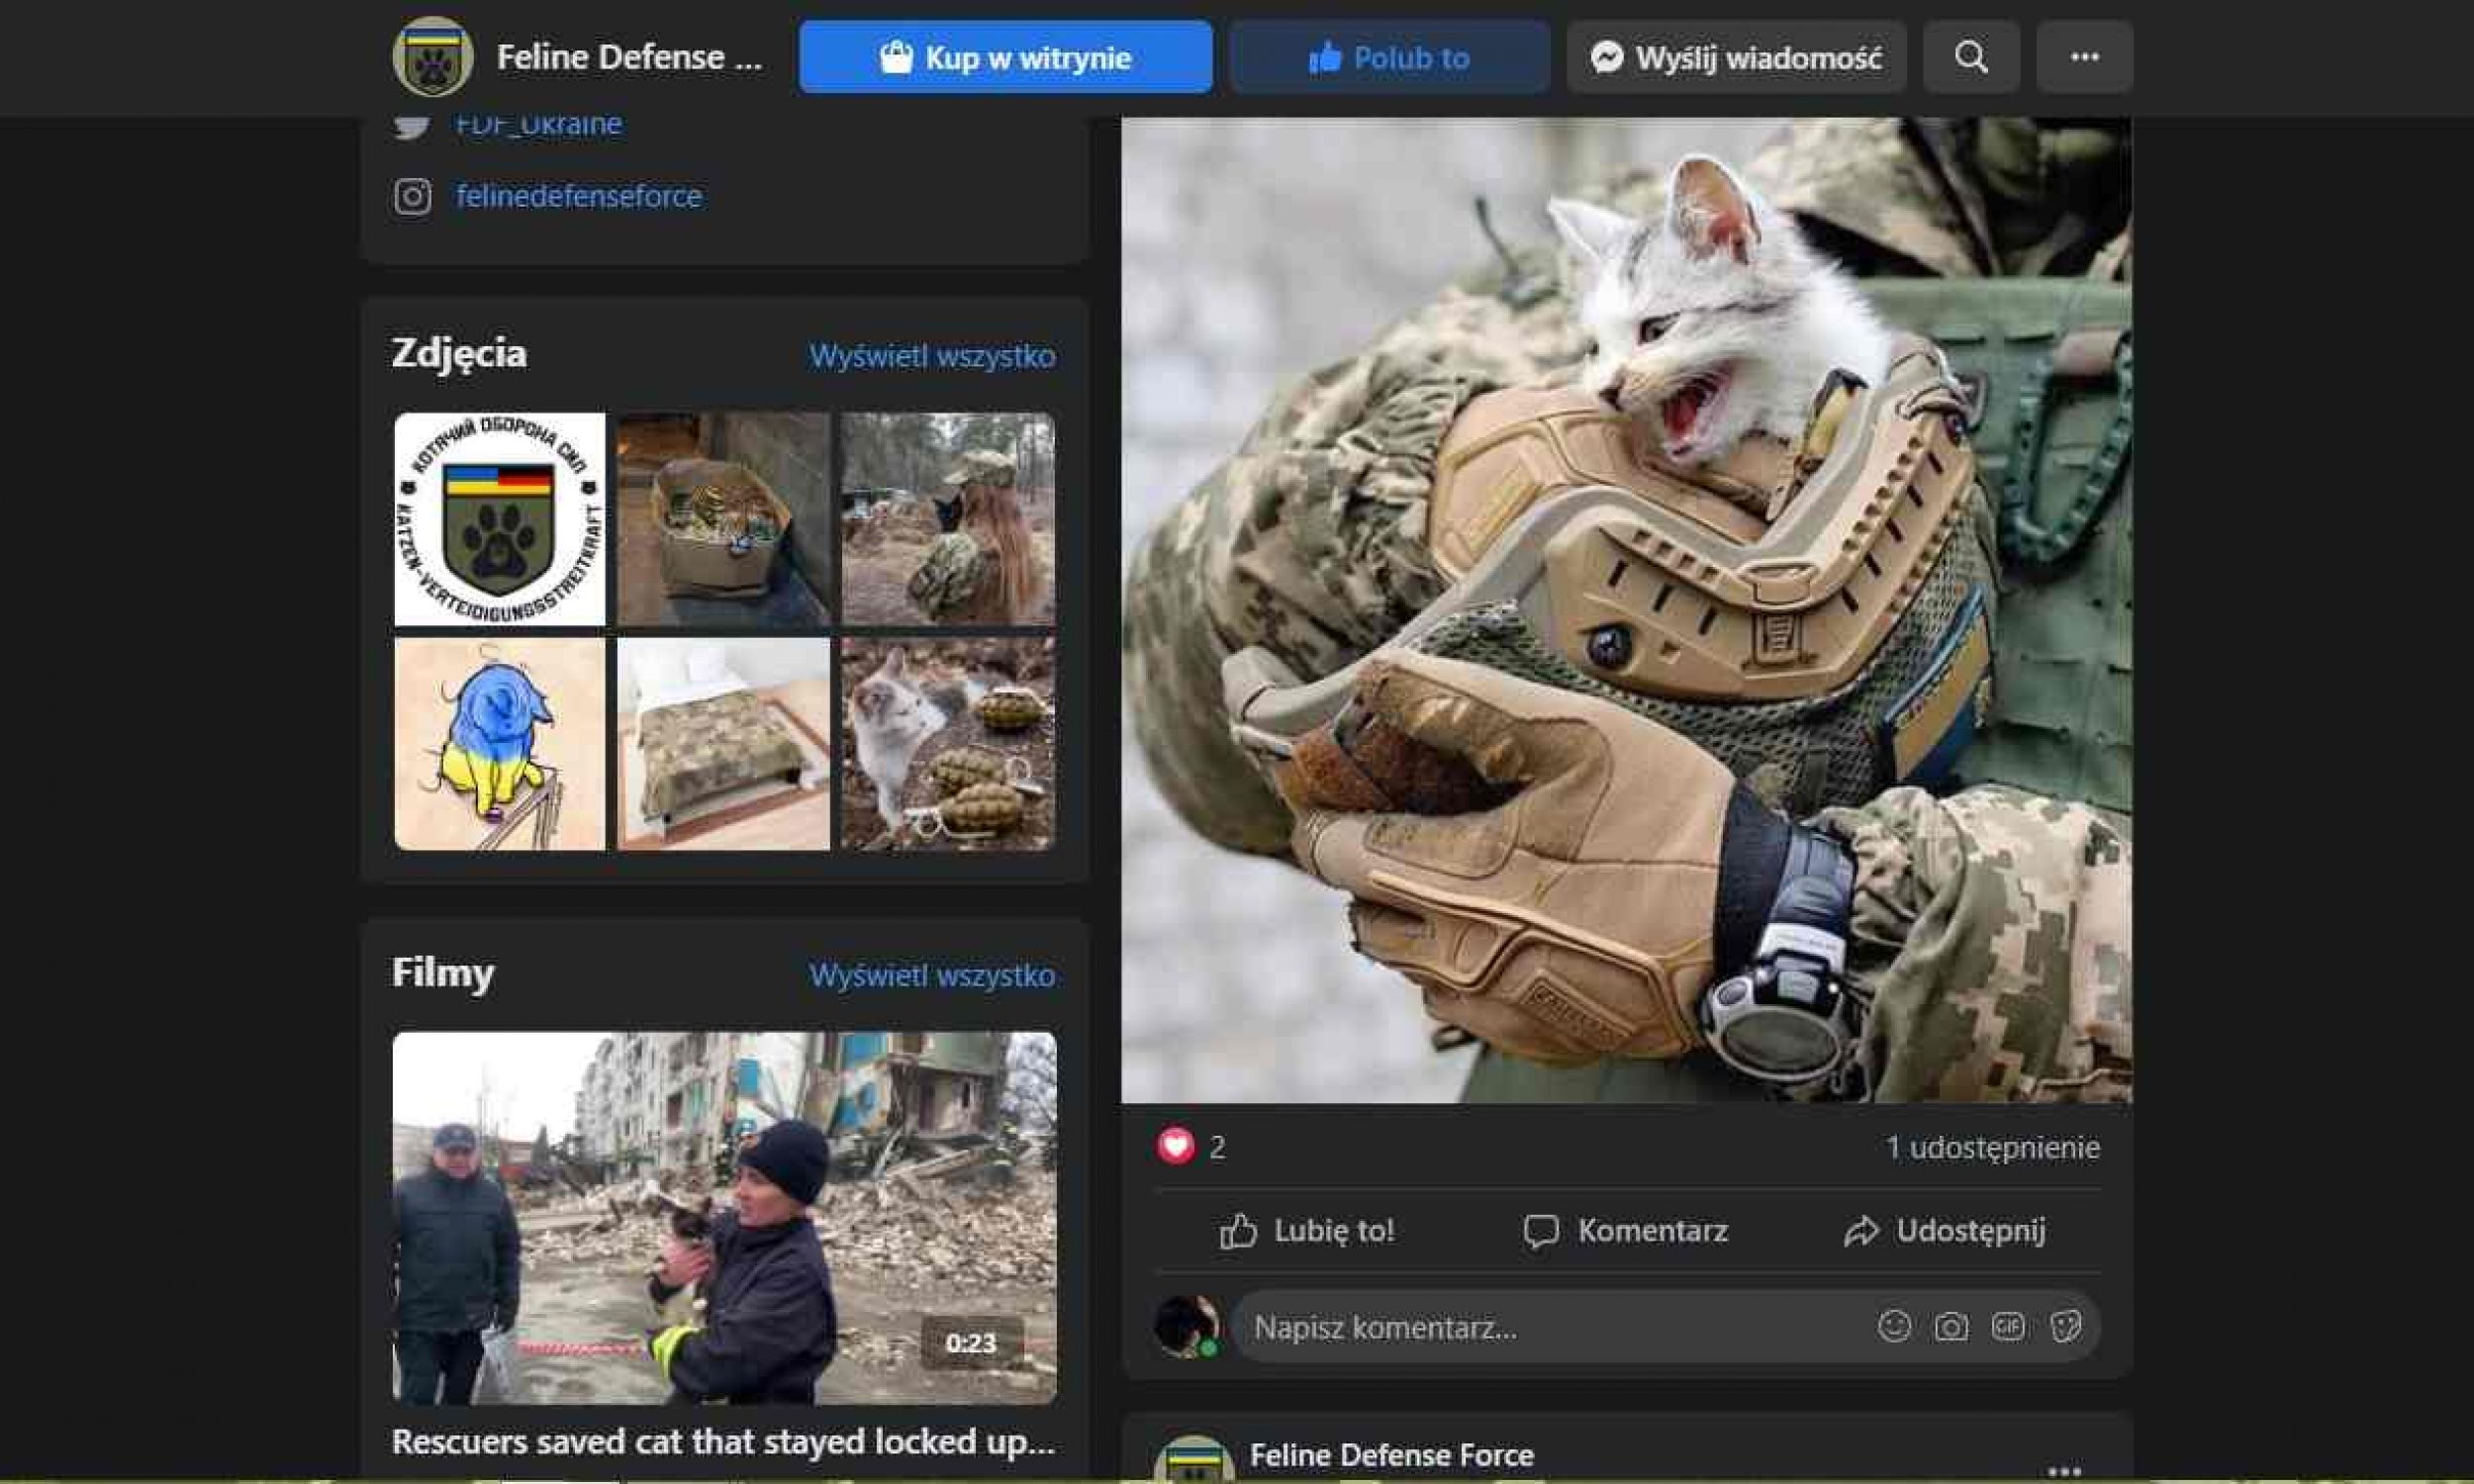 Коти «підтримуючи воїнів-людей, що борються за захист демократії від ворожих загарбників». Фото: знімок екрану Feline Defense Force/Facebook